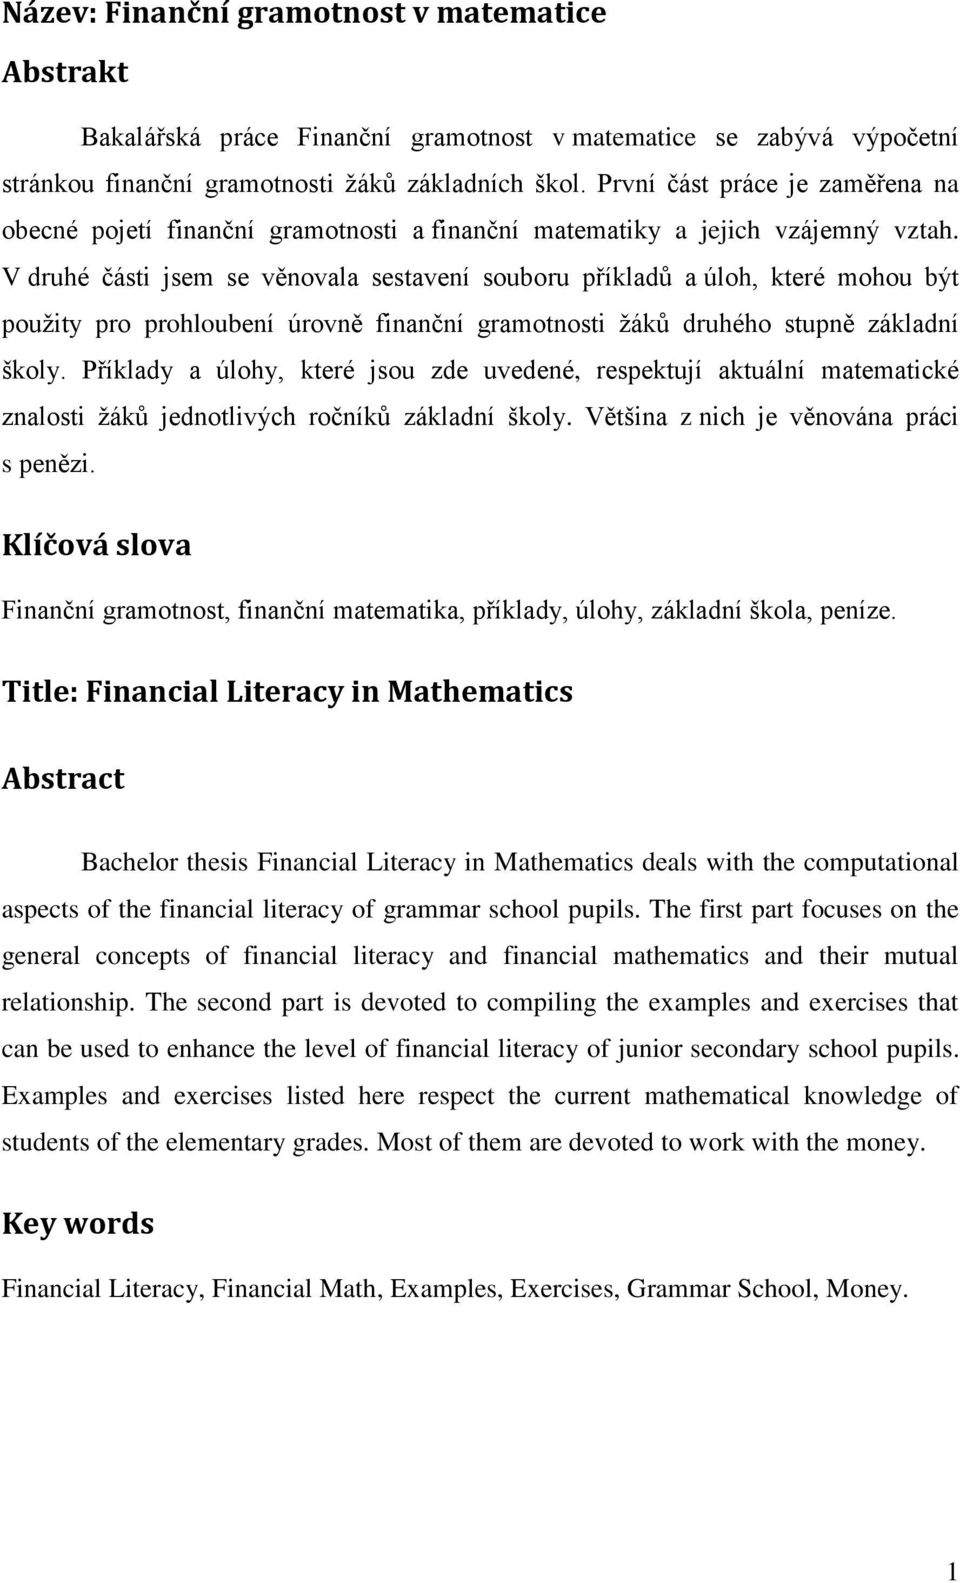 V druhé části jsem se věnovala sestavení souboru příkladů a úloh, které mohou být použity pro prohloubení úrovně finanční gramotnosti žáků druhého stupně základní školy.